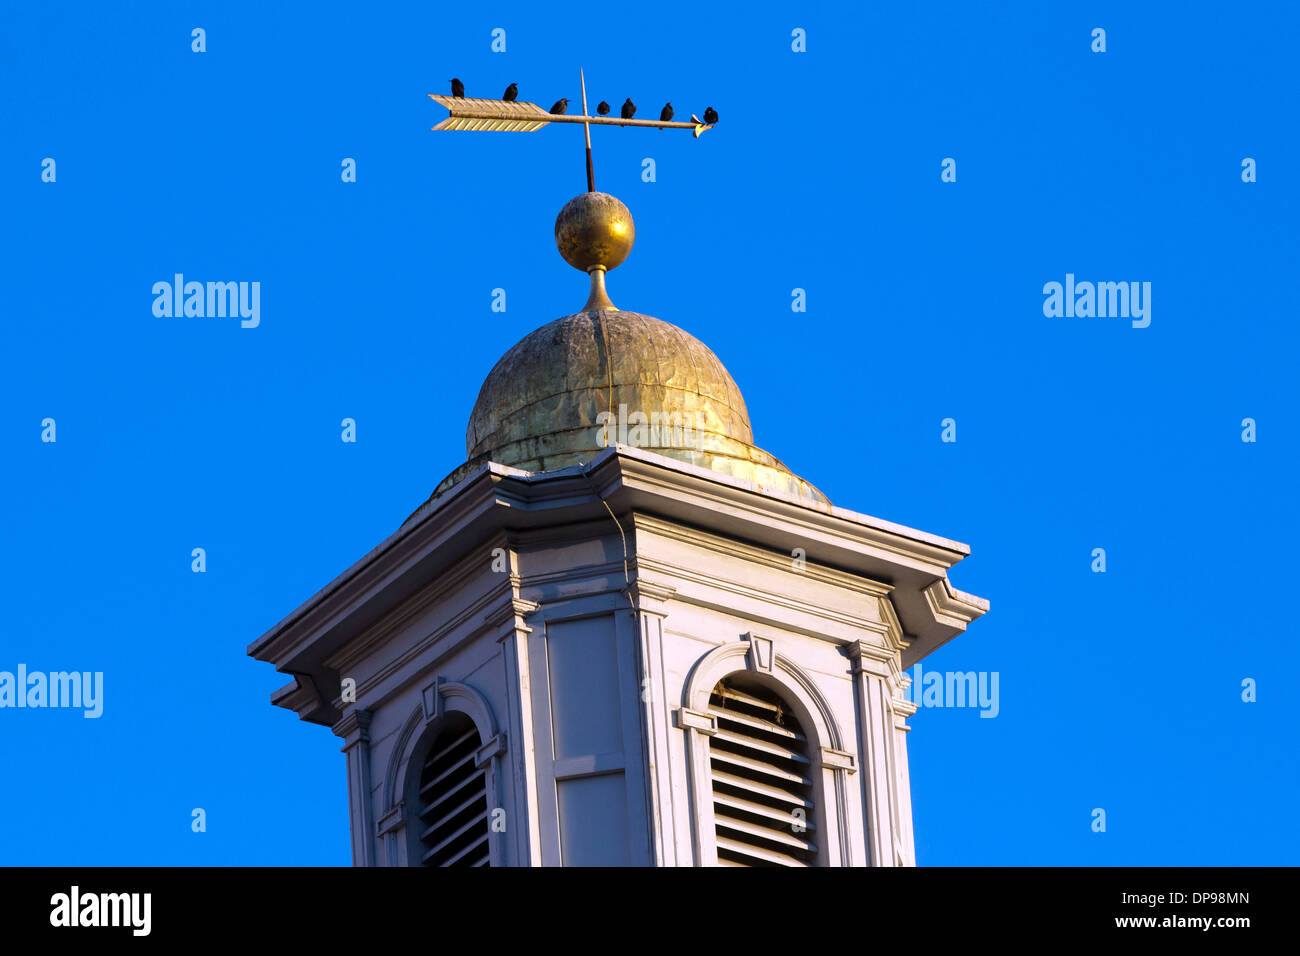 Vögel sitzen auf der Wetterfahne des St. Johns Episcopal Church, Washington DC. 17. Dezember 2013. Foto von Trevor Collens. Stockfoto